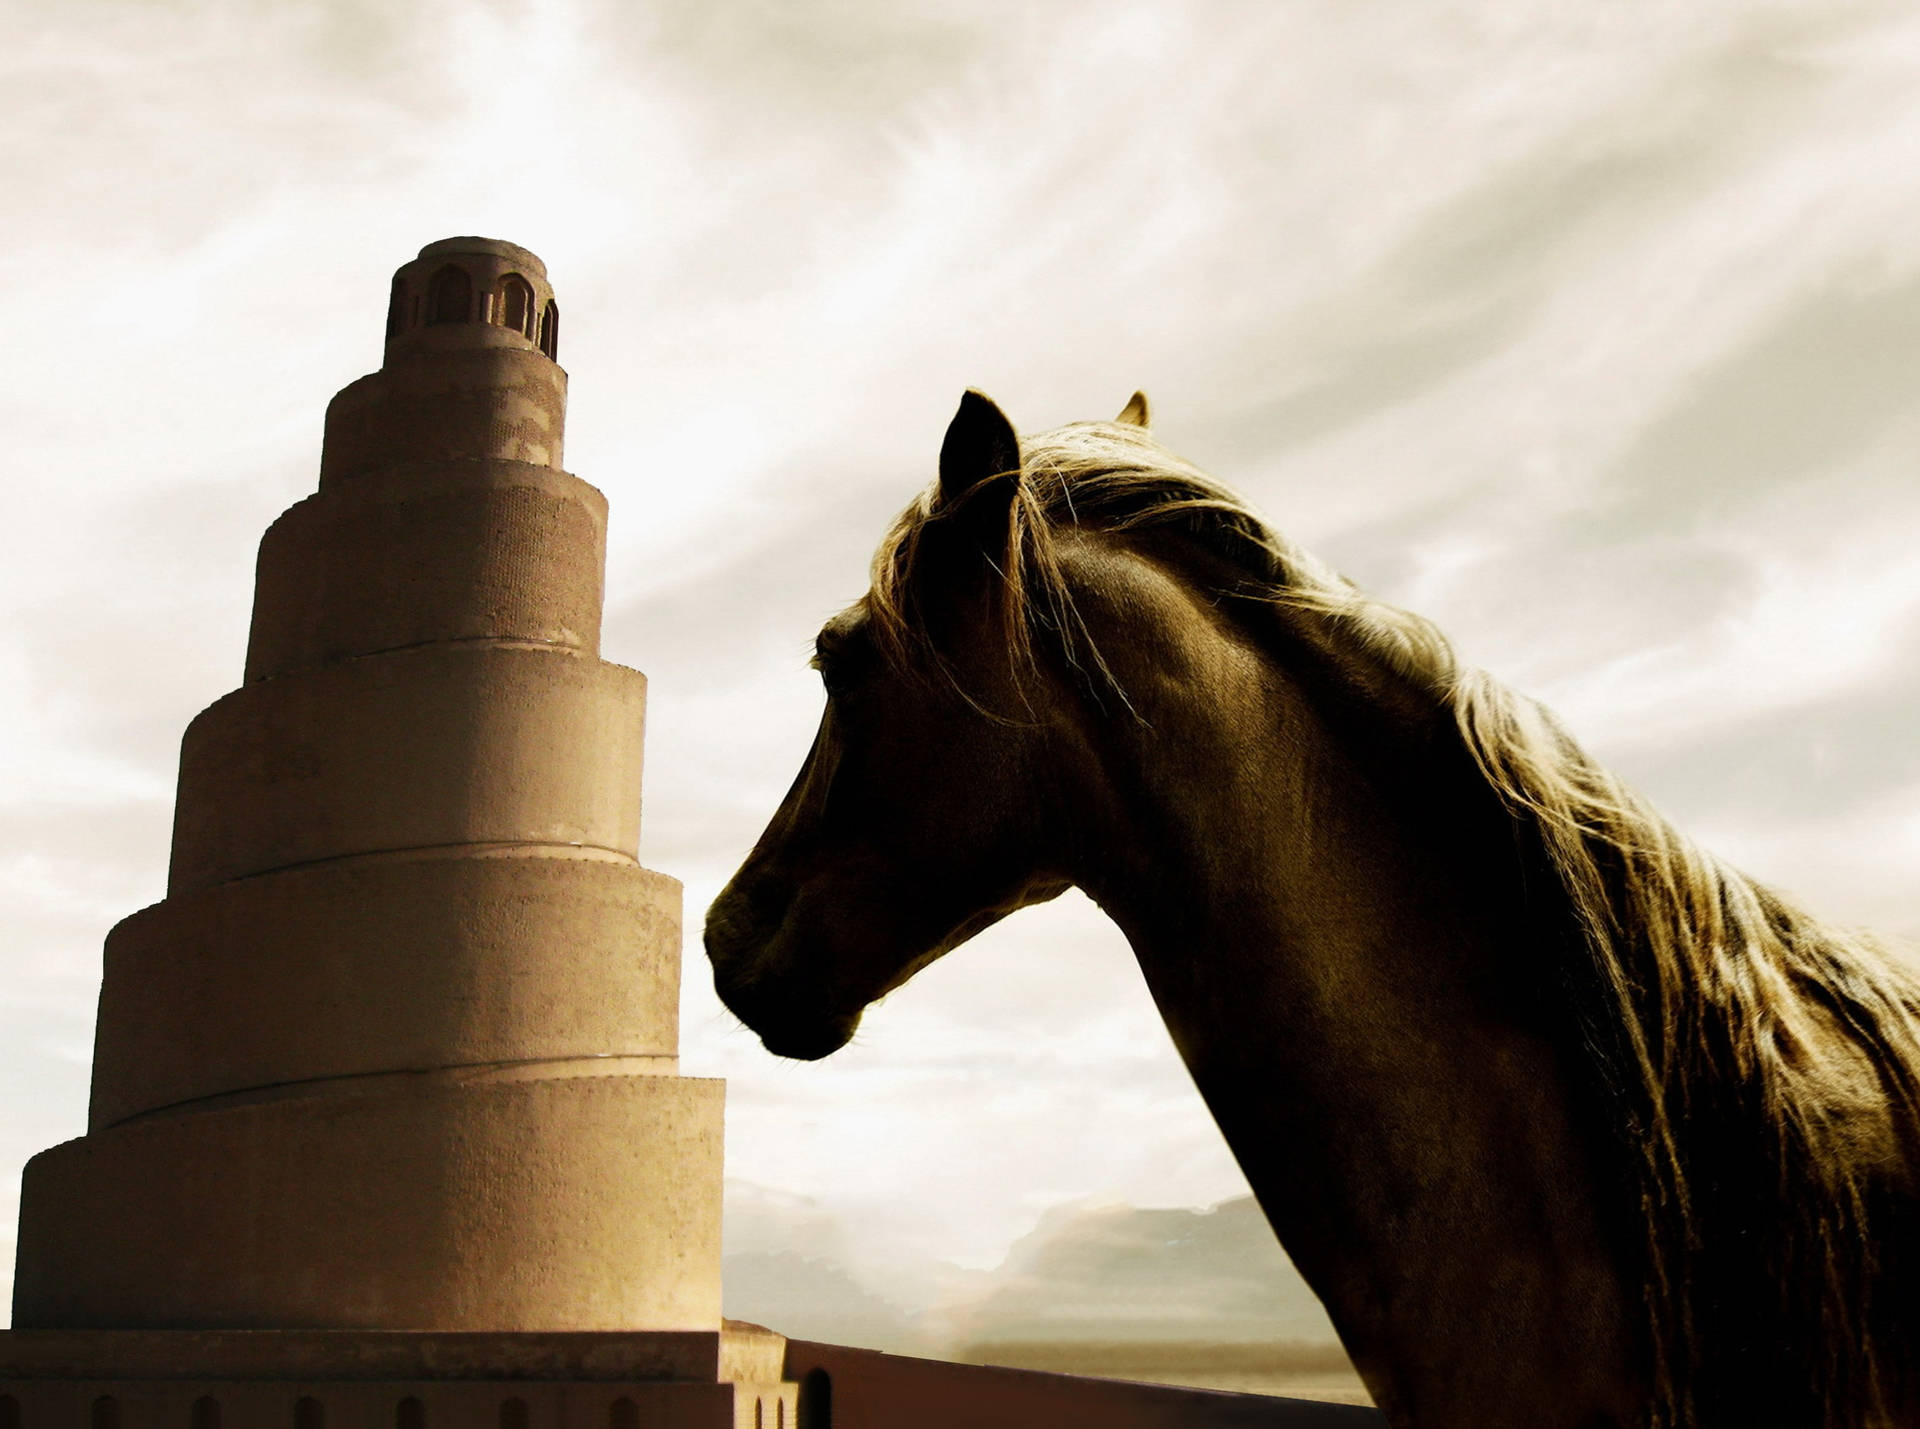 Iraq Samarra Spiral Minaret And Horse Background